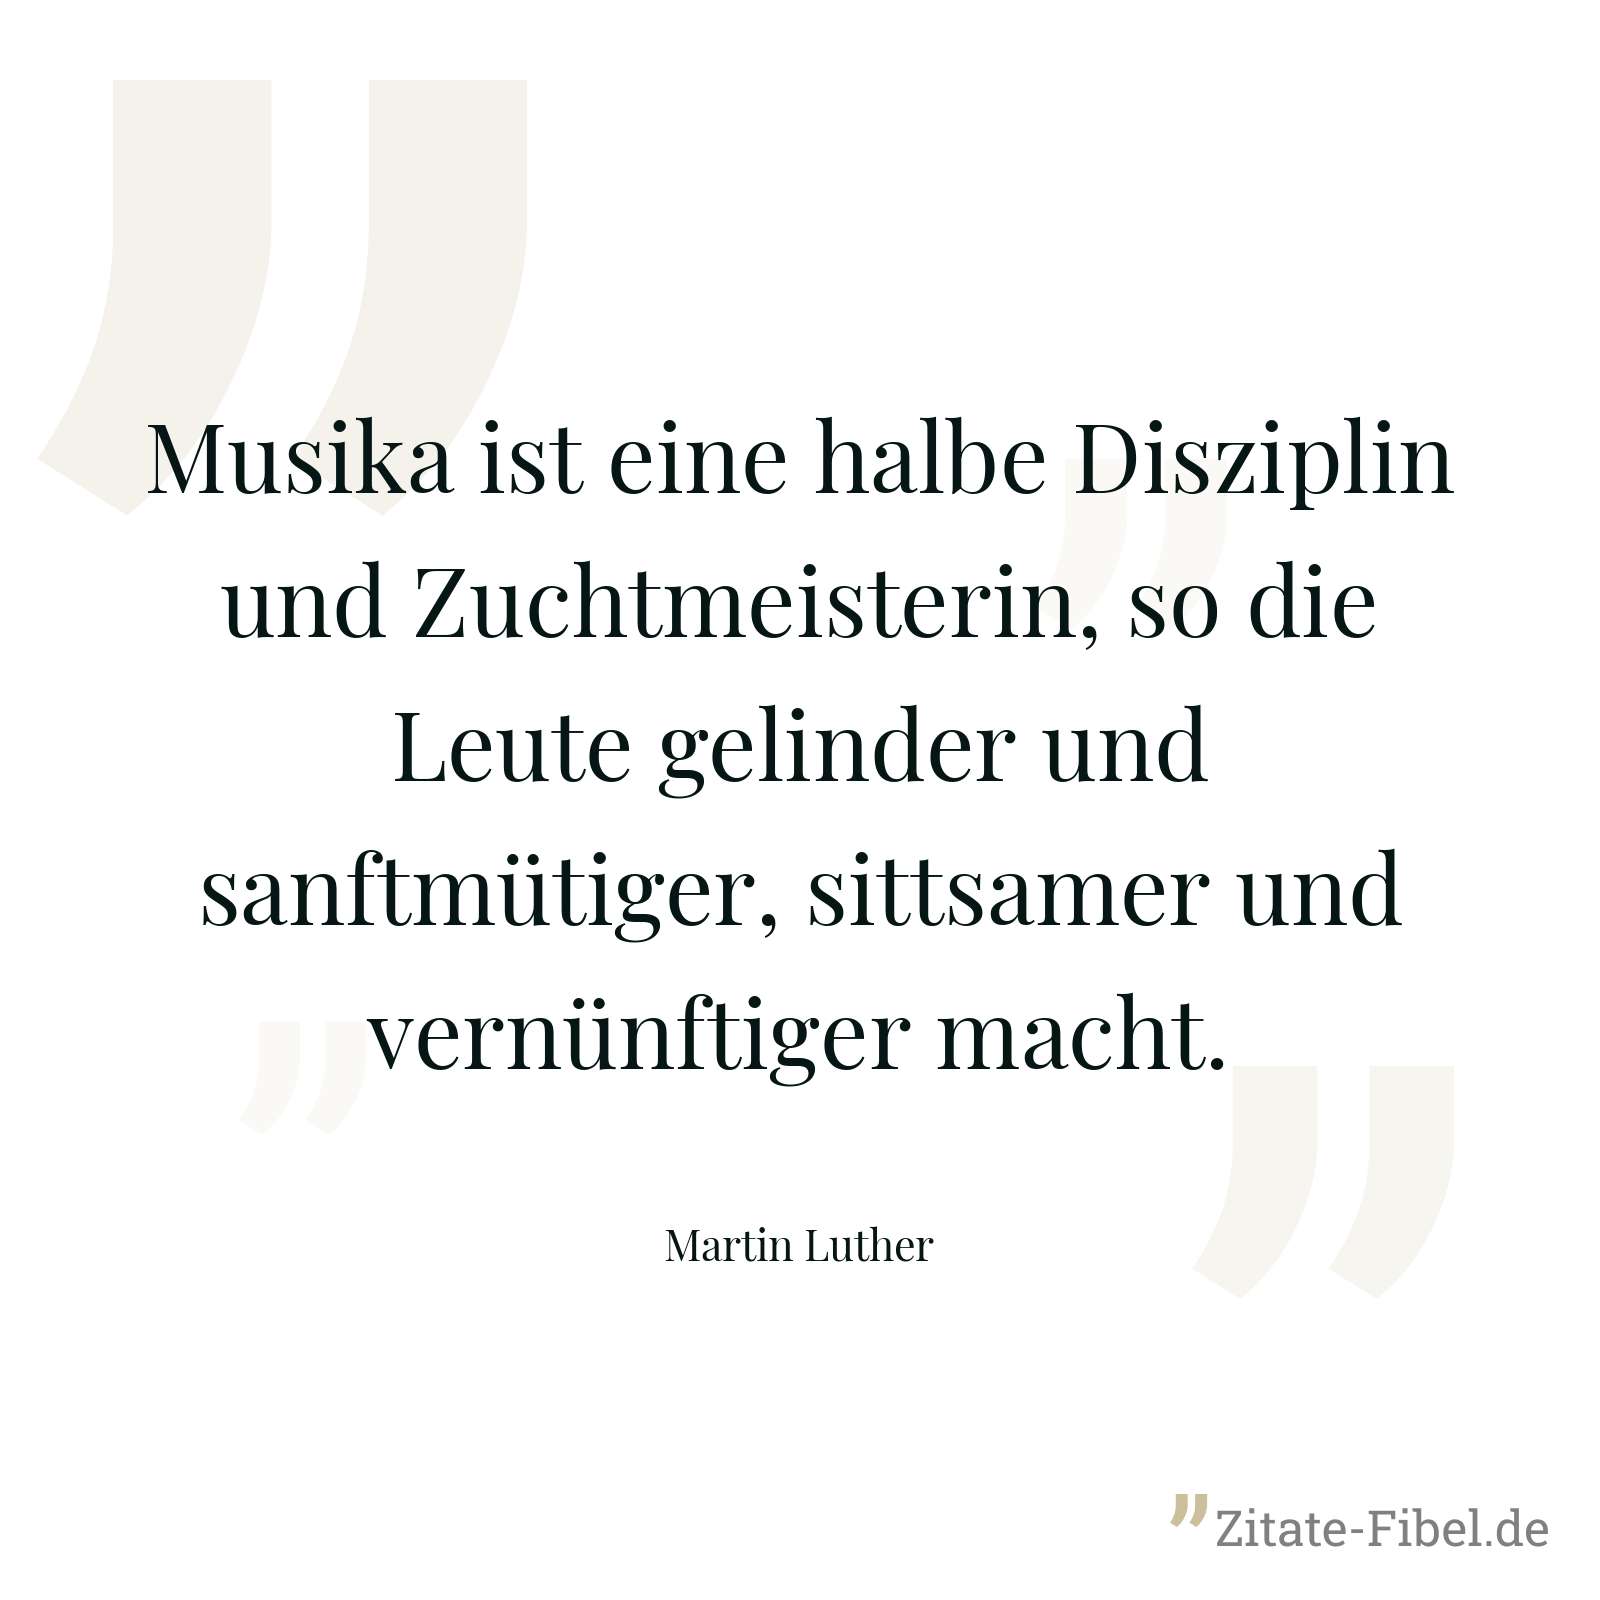 Musika ist eine halbe Disziplin und Zuchtmeisterin, so die Leute gelinder und sanftmütiger, sittsamer und vernünftiger macht. - Martin Luther